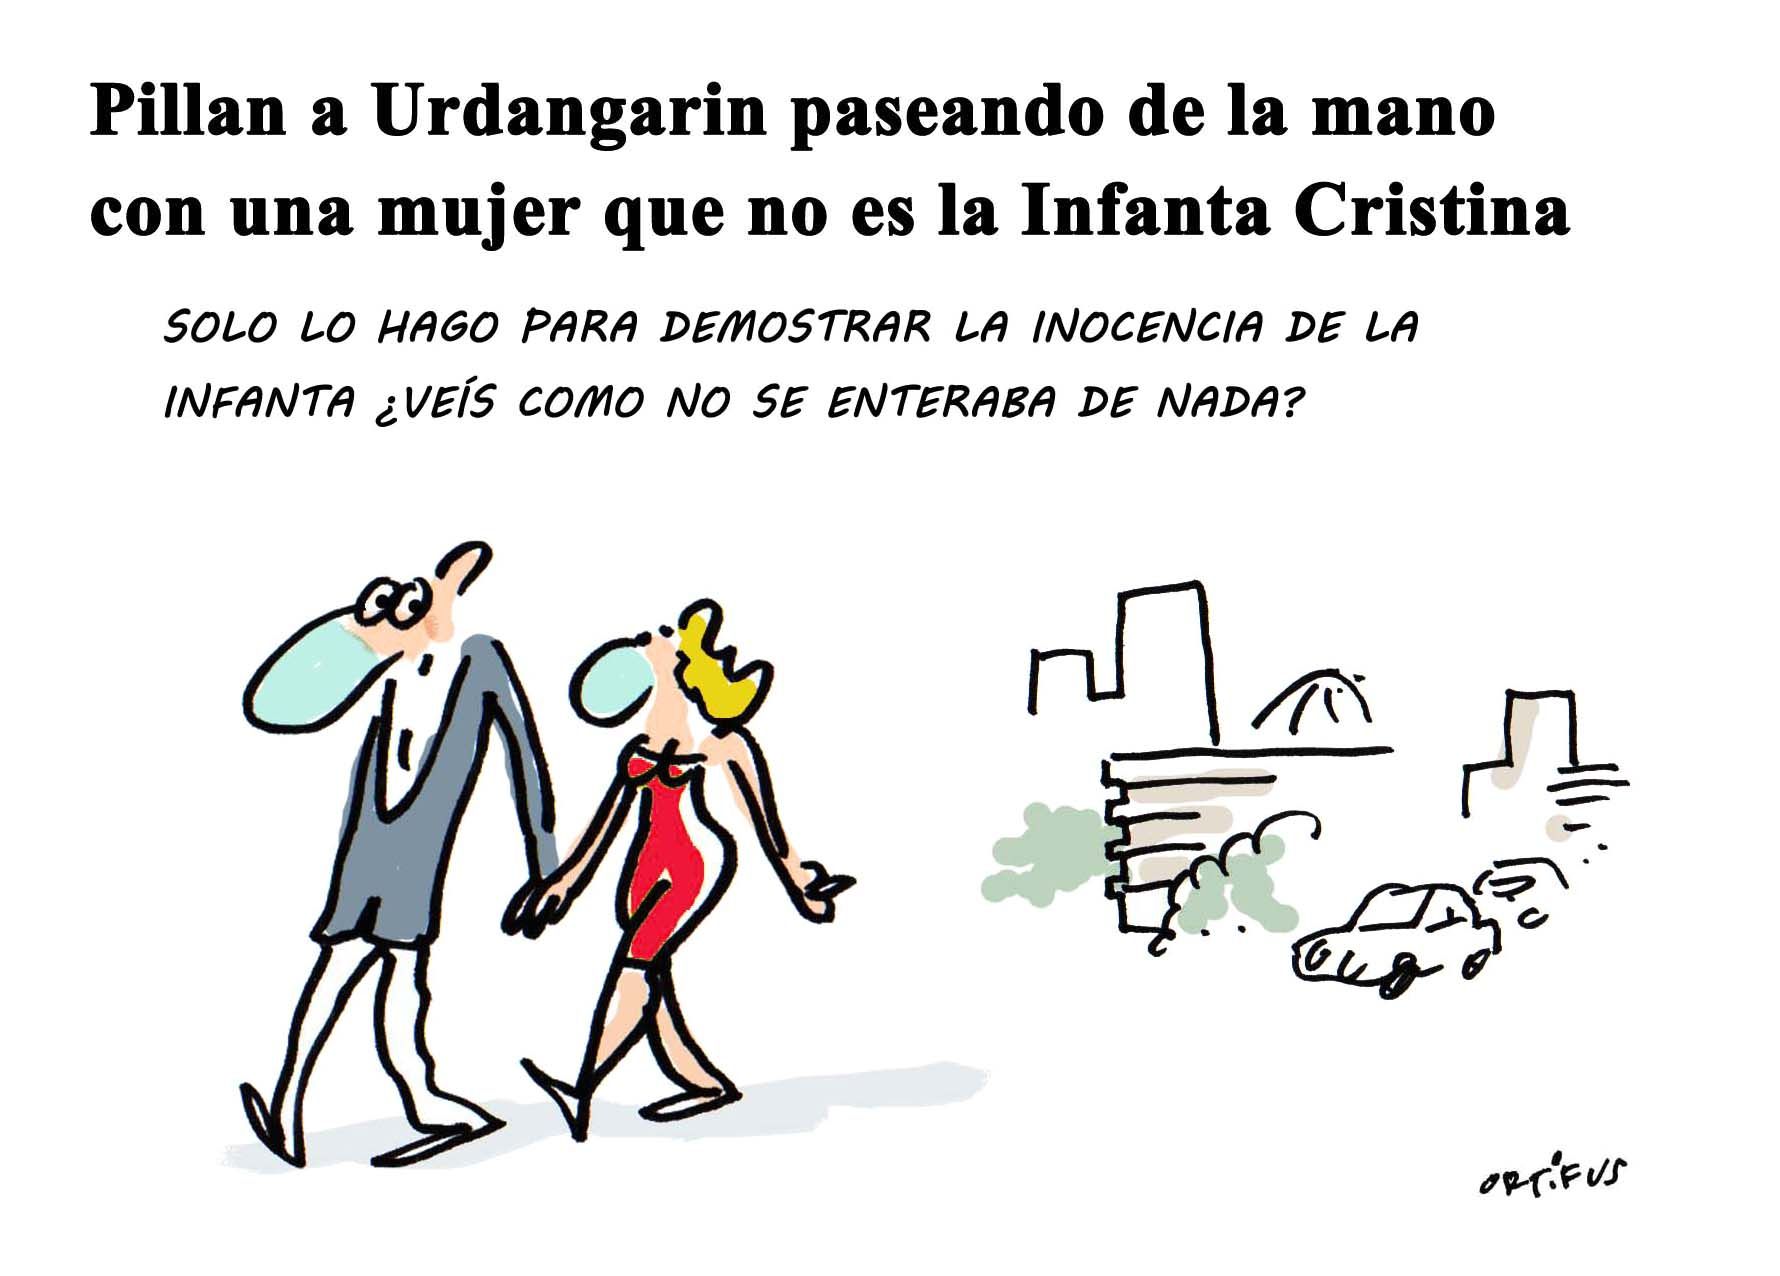 Pillan a Urdangarin paseando de la mano con una mujer que no es la Infanta Cristina